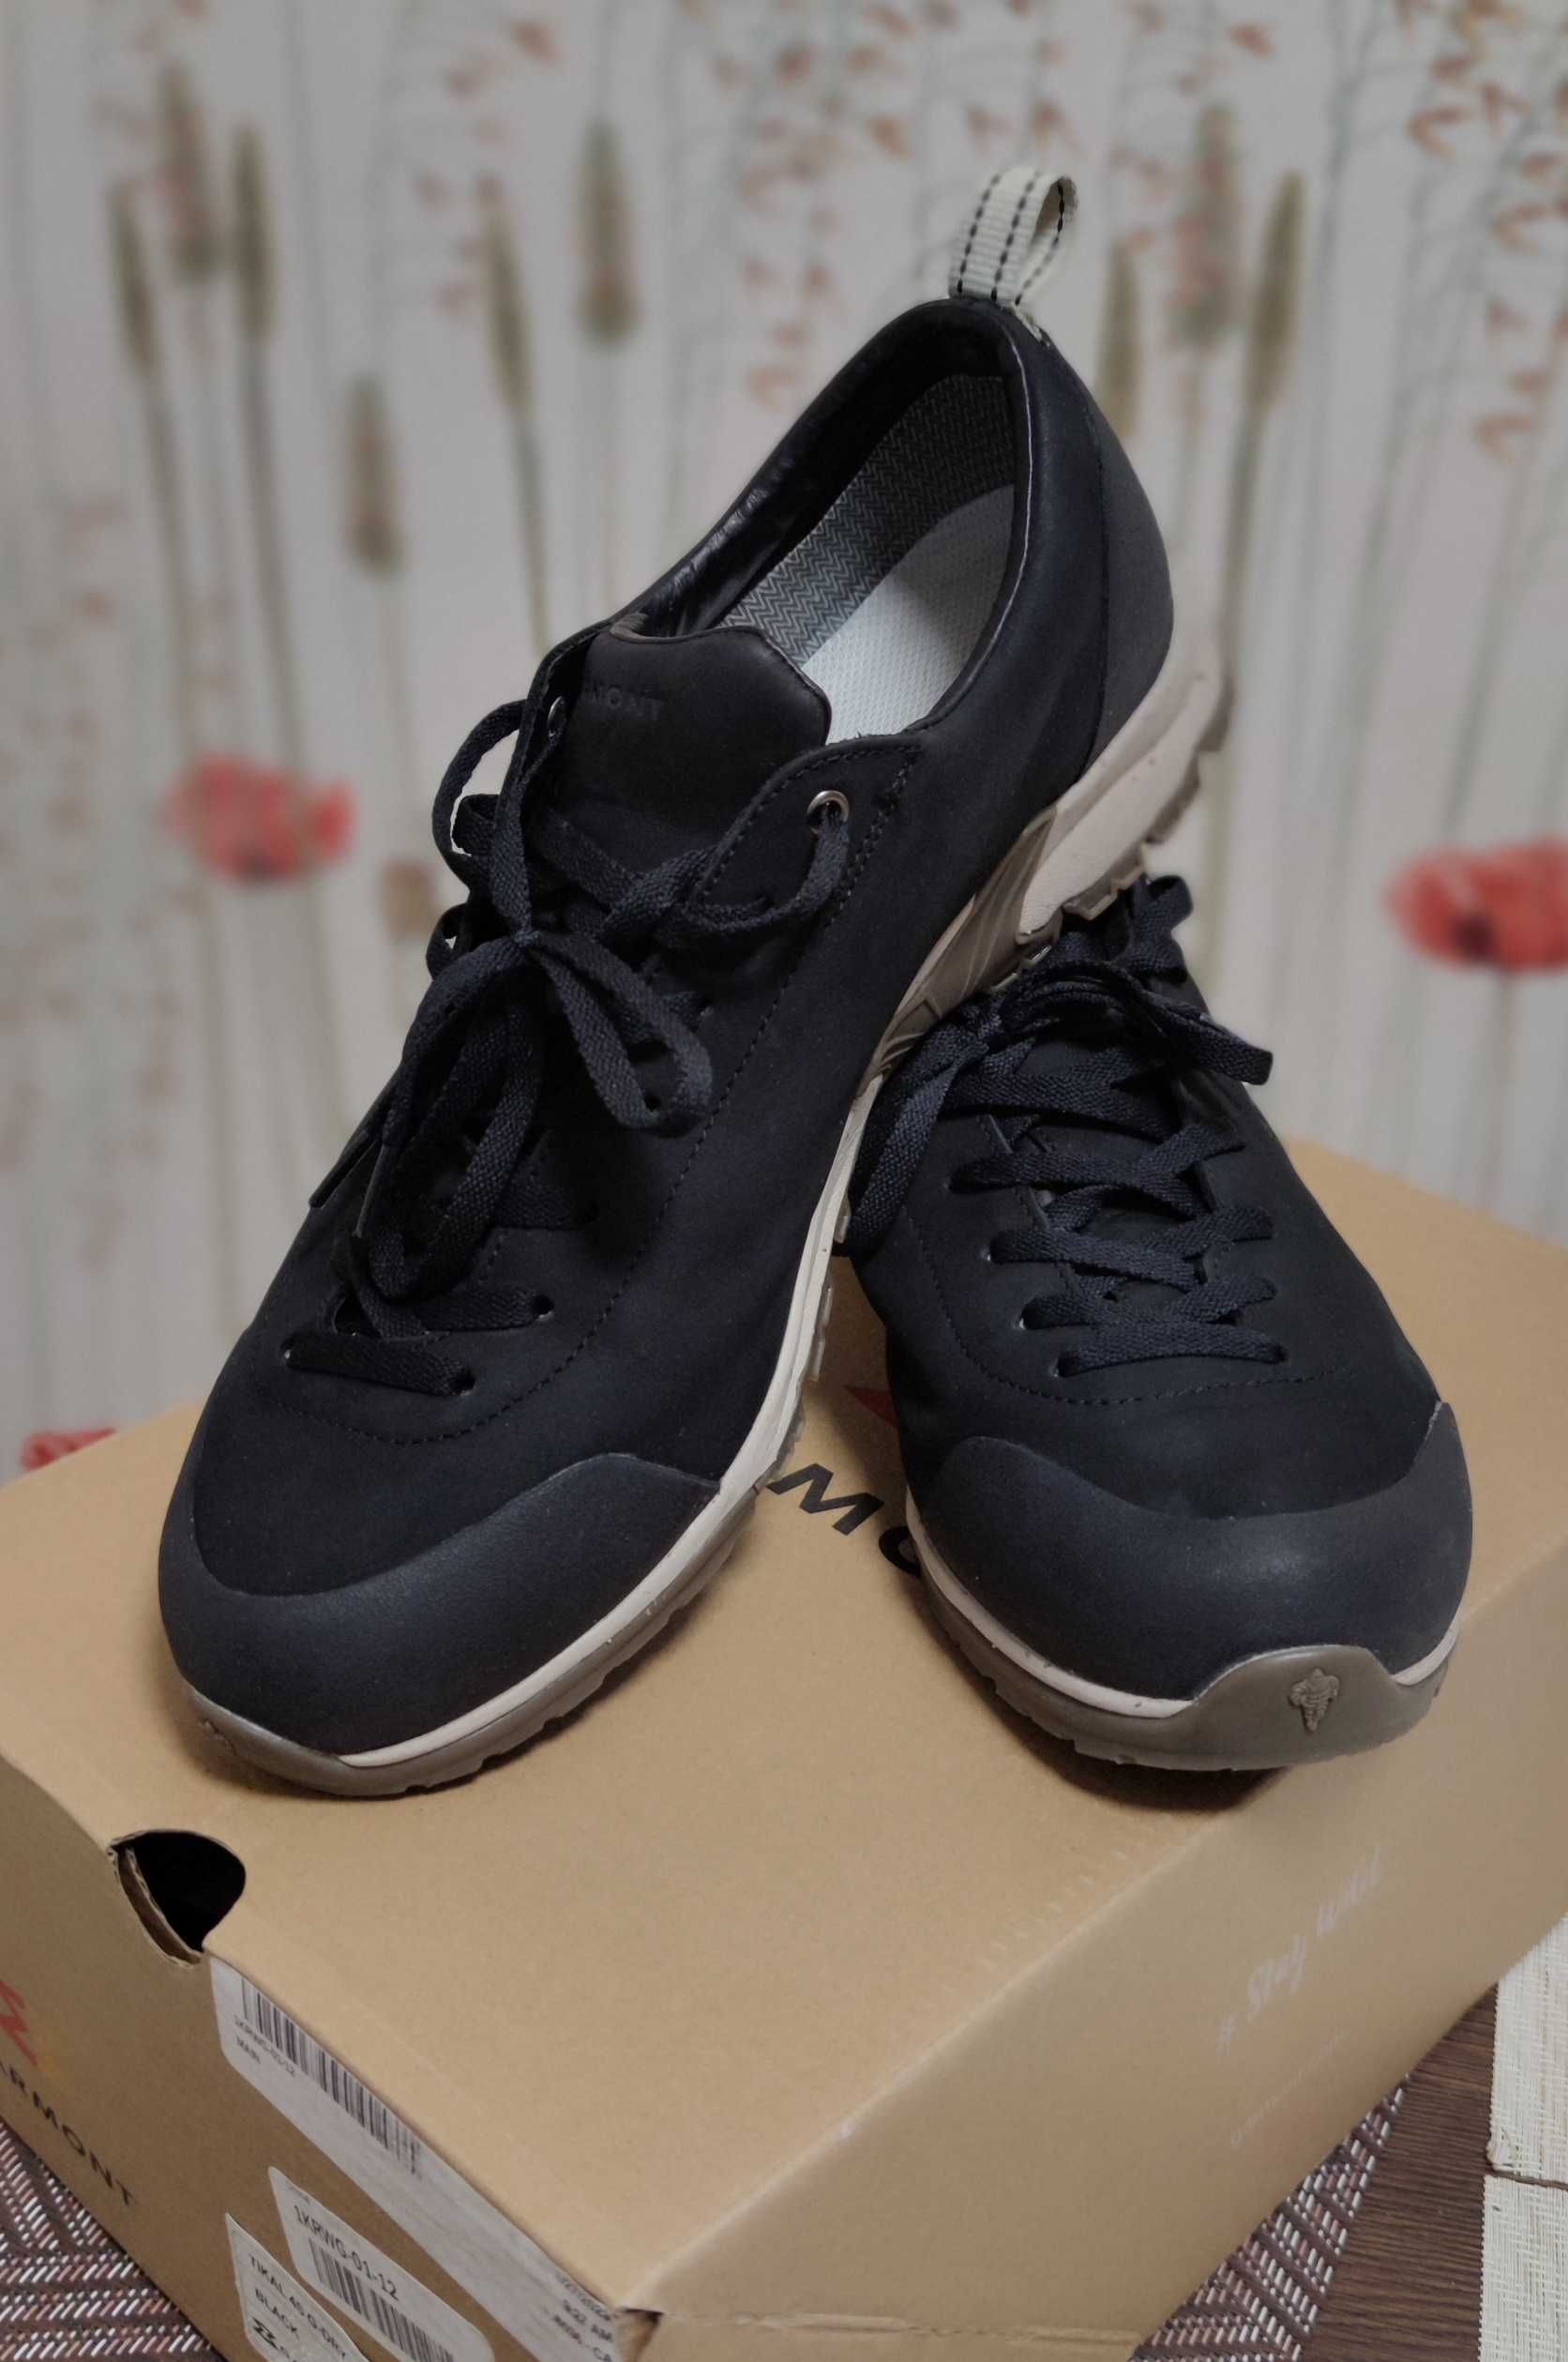 Garmont Tikal 4S G-Dry черевики чол. низькі/low 44-45р. місто/трекінг